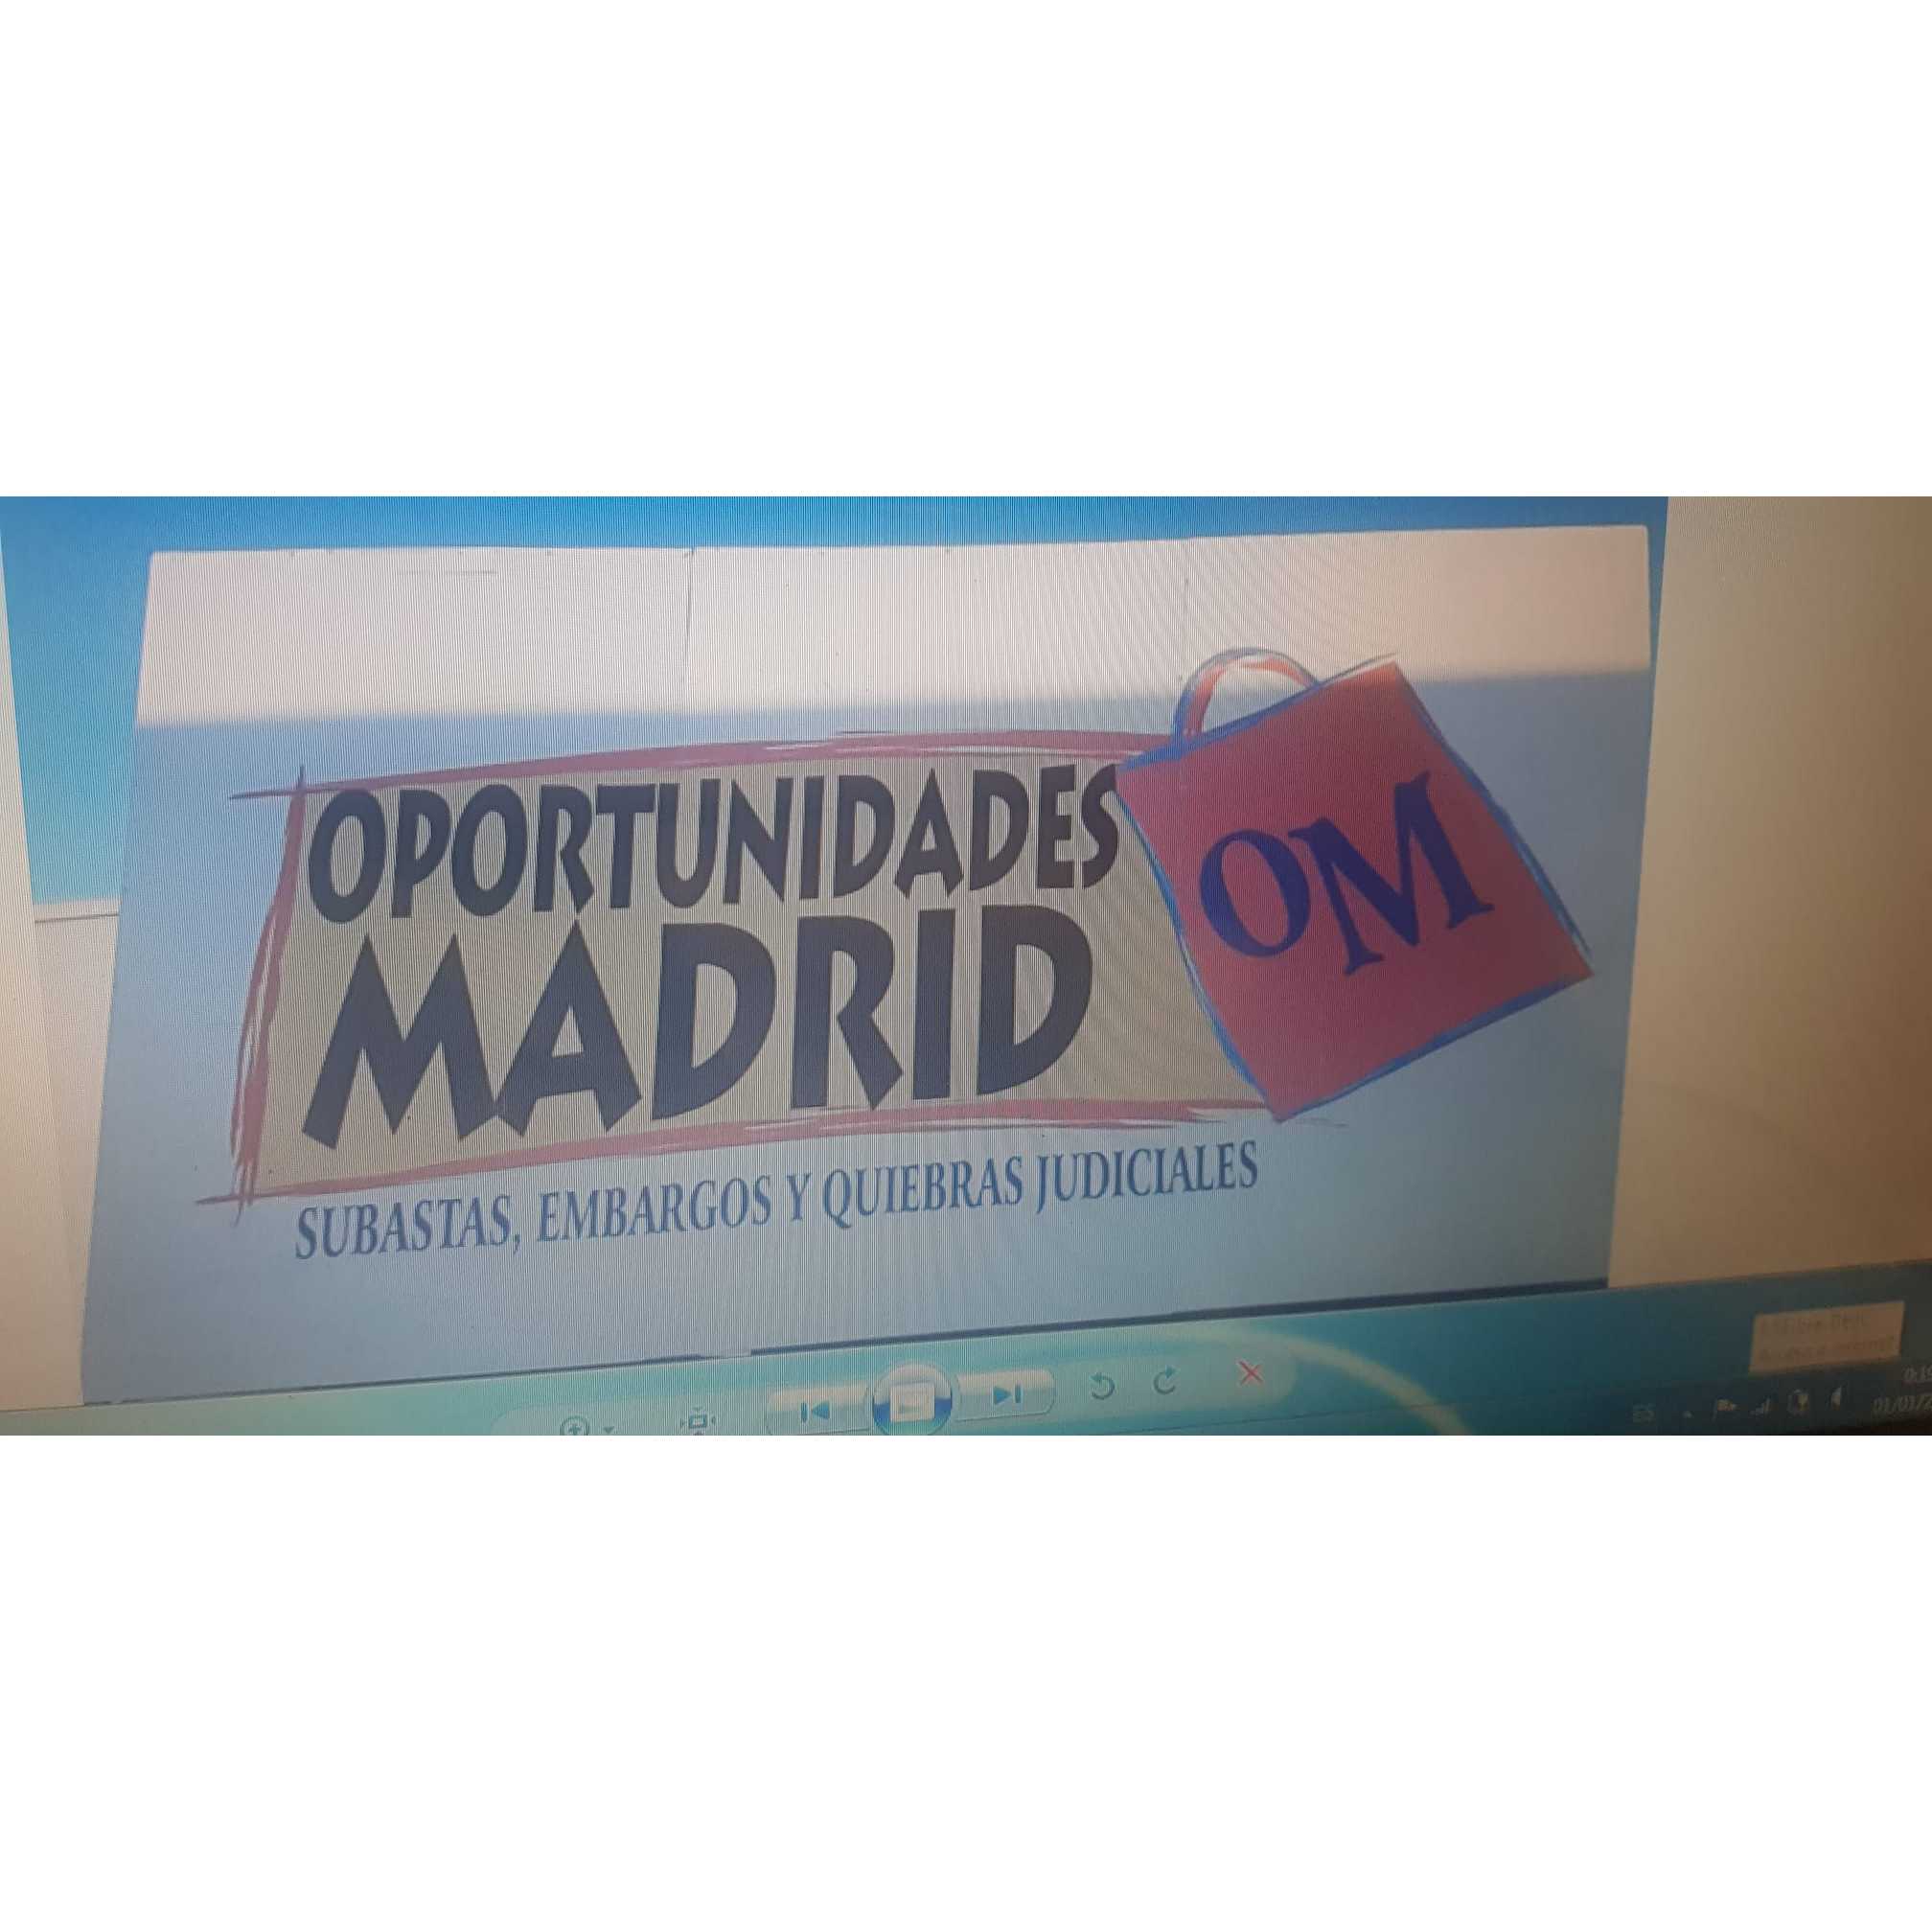 Opportunidades Madrid Rivas-Vaciamadrid